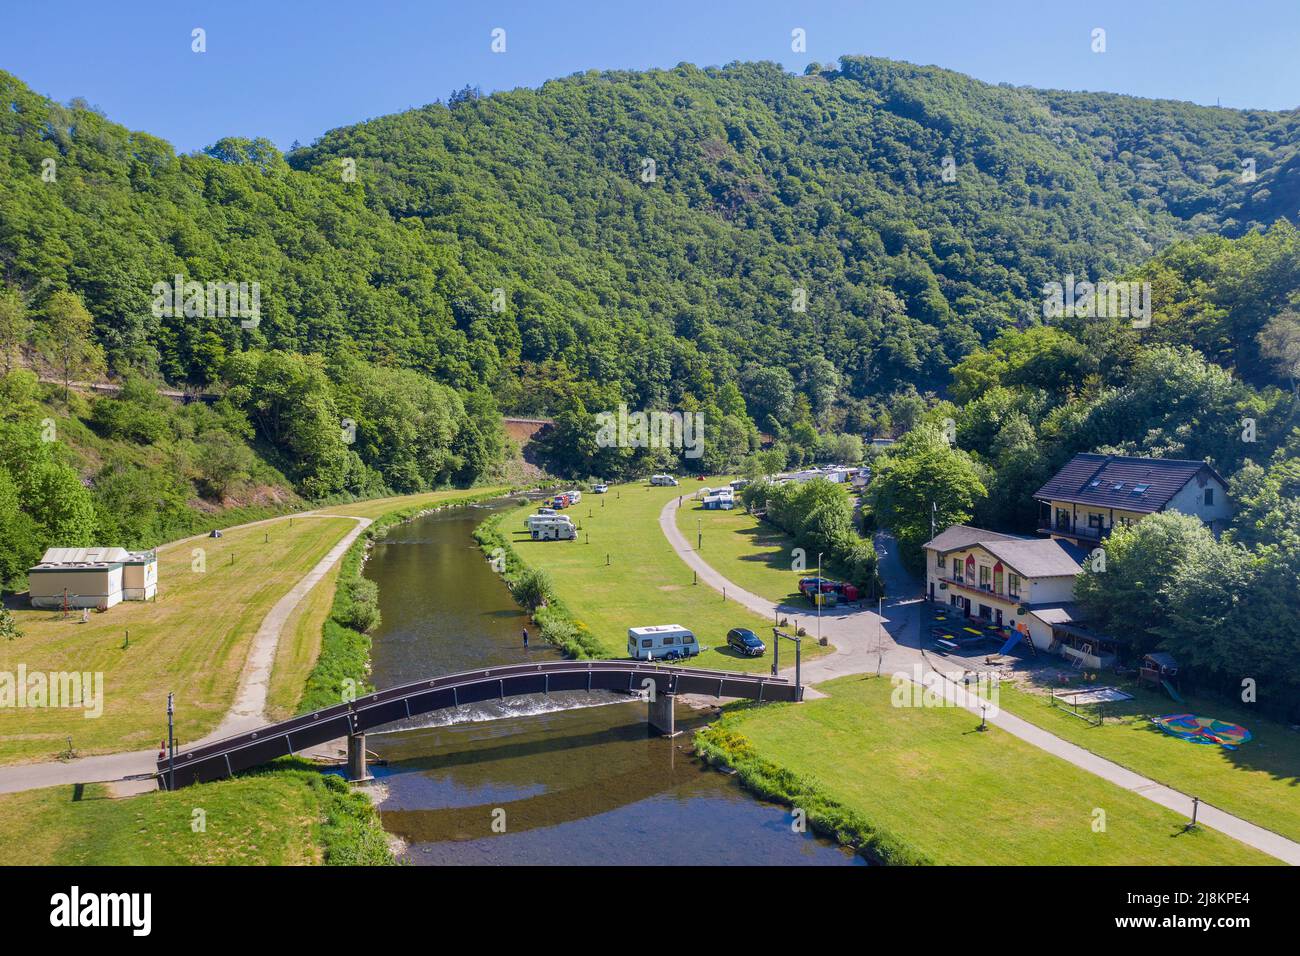 Luftaufnahme des Campingplatzes Camping du Moulin, am Sure Fluss, Bourscheid-Plage, Bourscheid, Diekirch Bezirk, Ardennen, Luxemburg, Europa Stockfoto